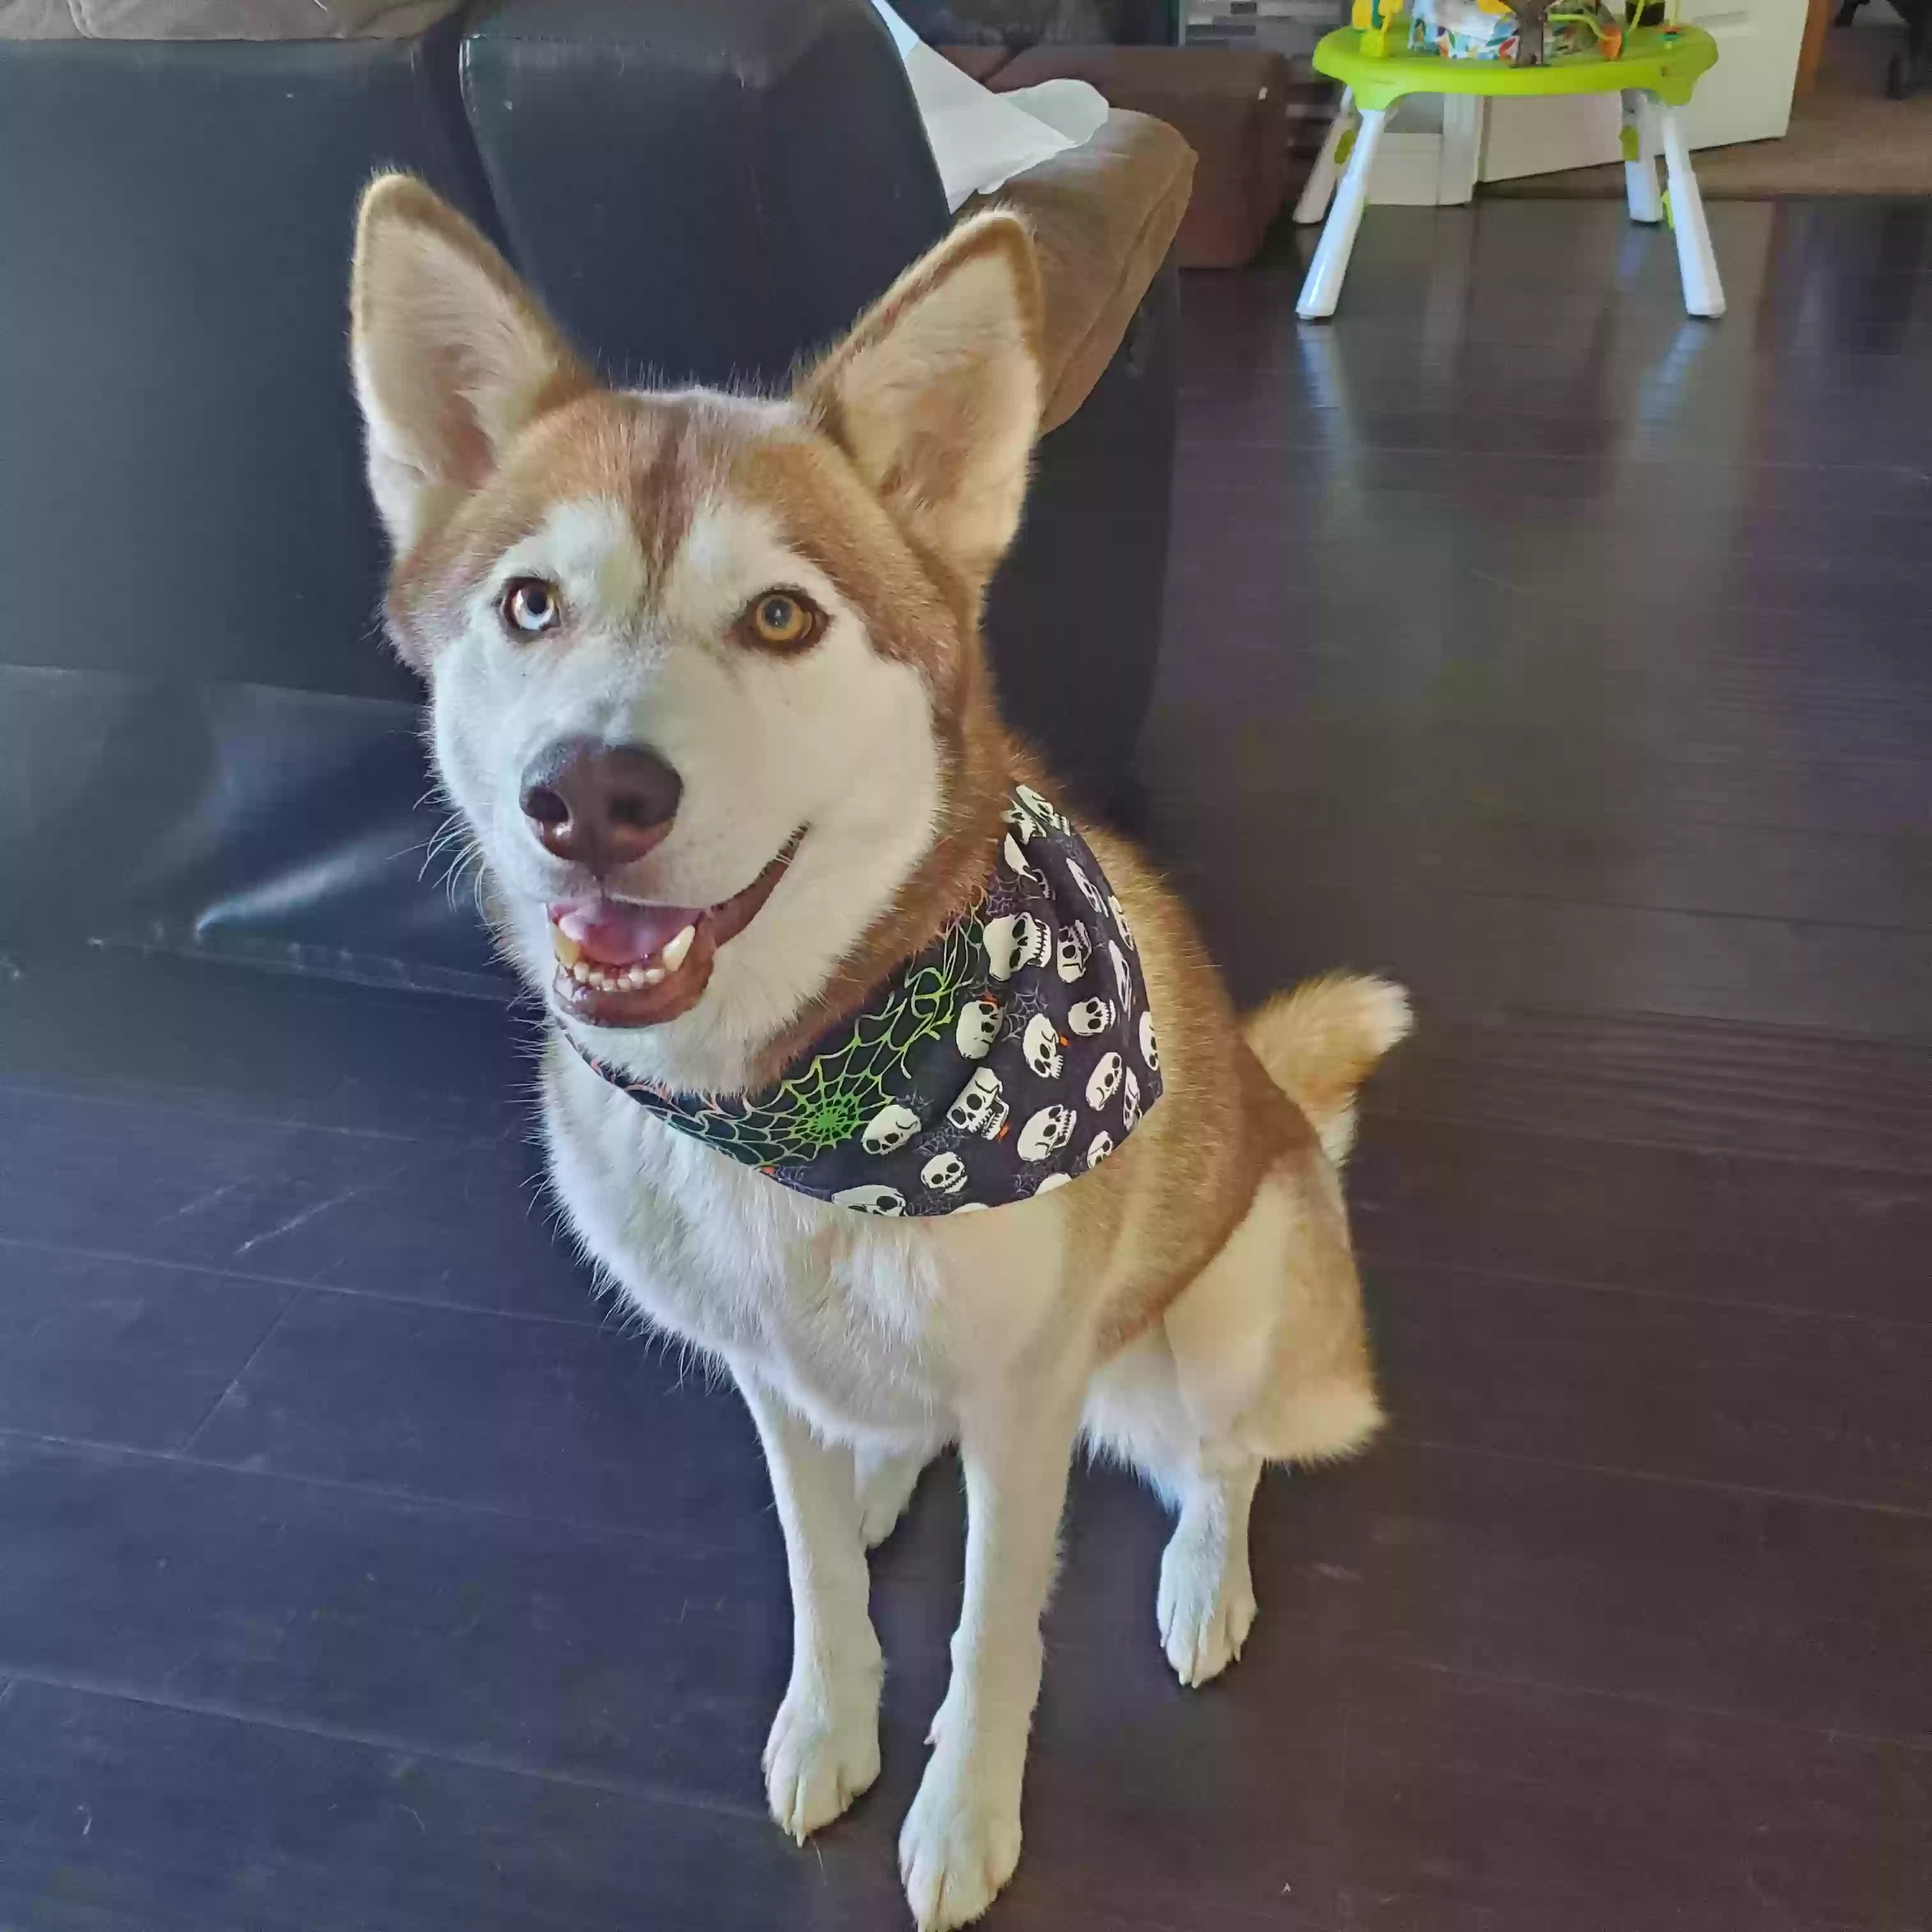 adoptable Dog in Modesto,CA named Kiara